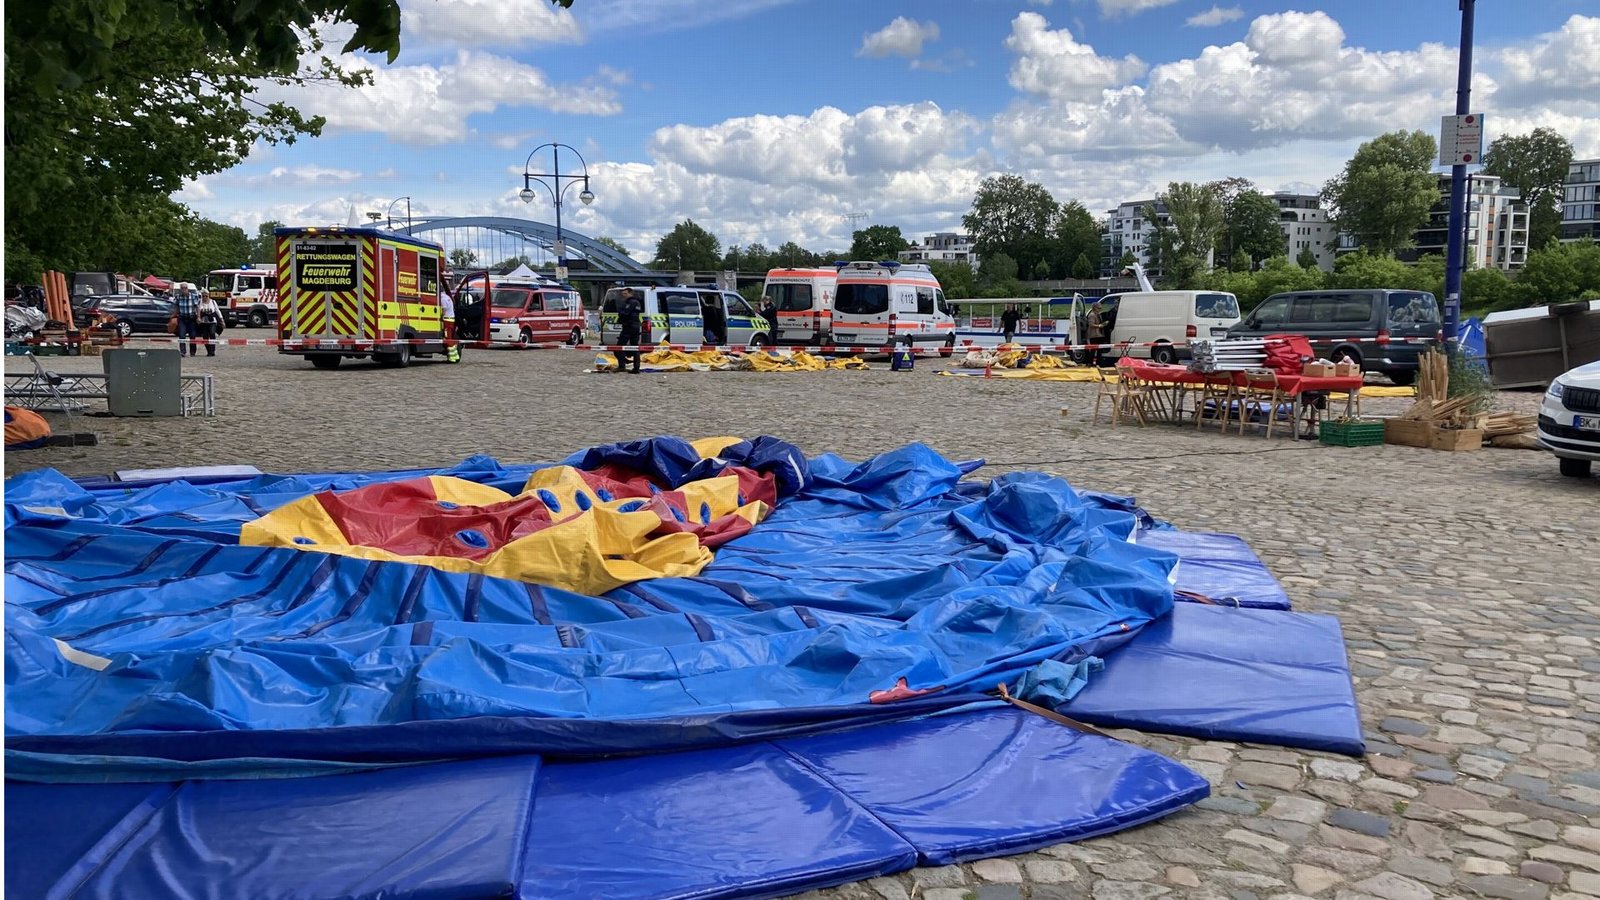 Bei dem Hüpfburg-Unfall waren neun Menschen verletzt worden.Foto: dpa/Christopher Kissmann